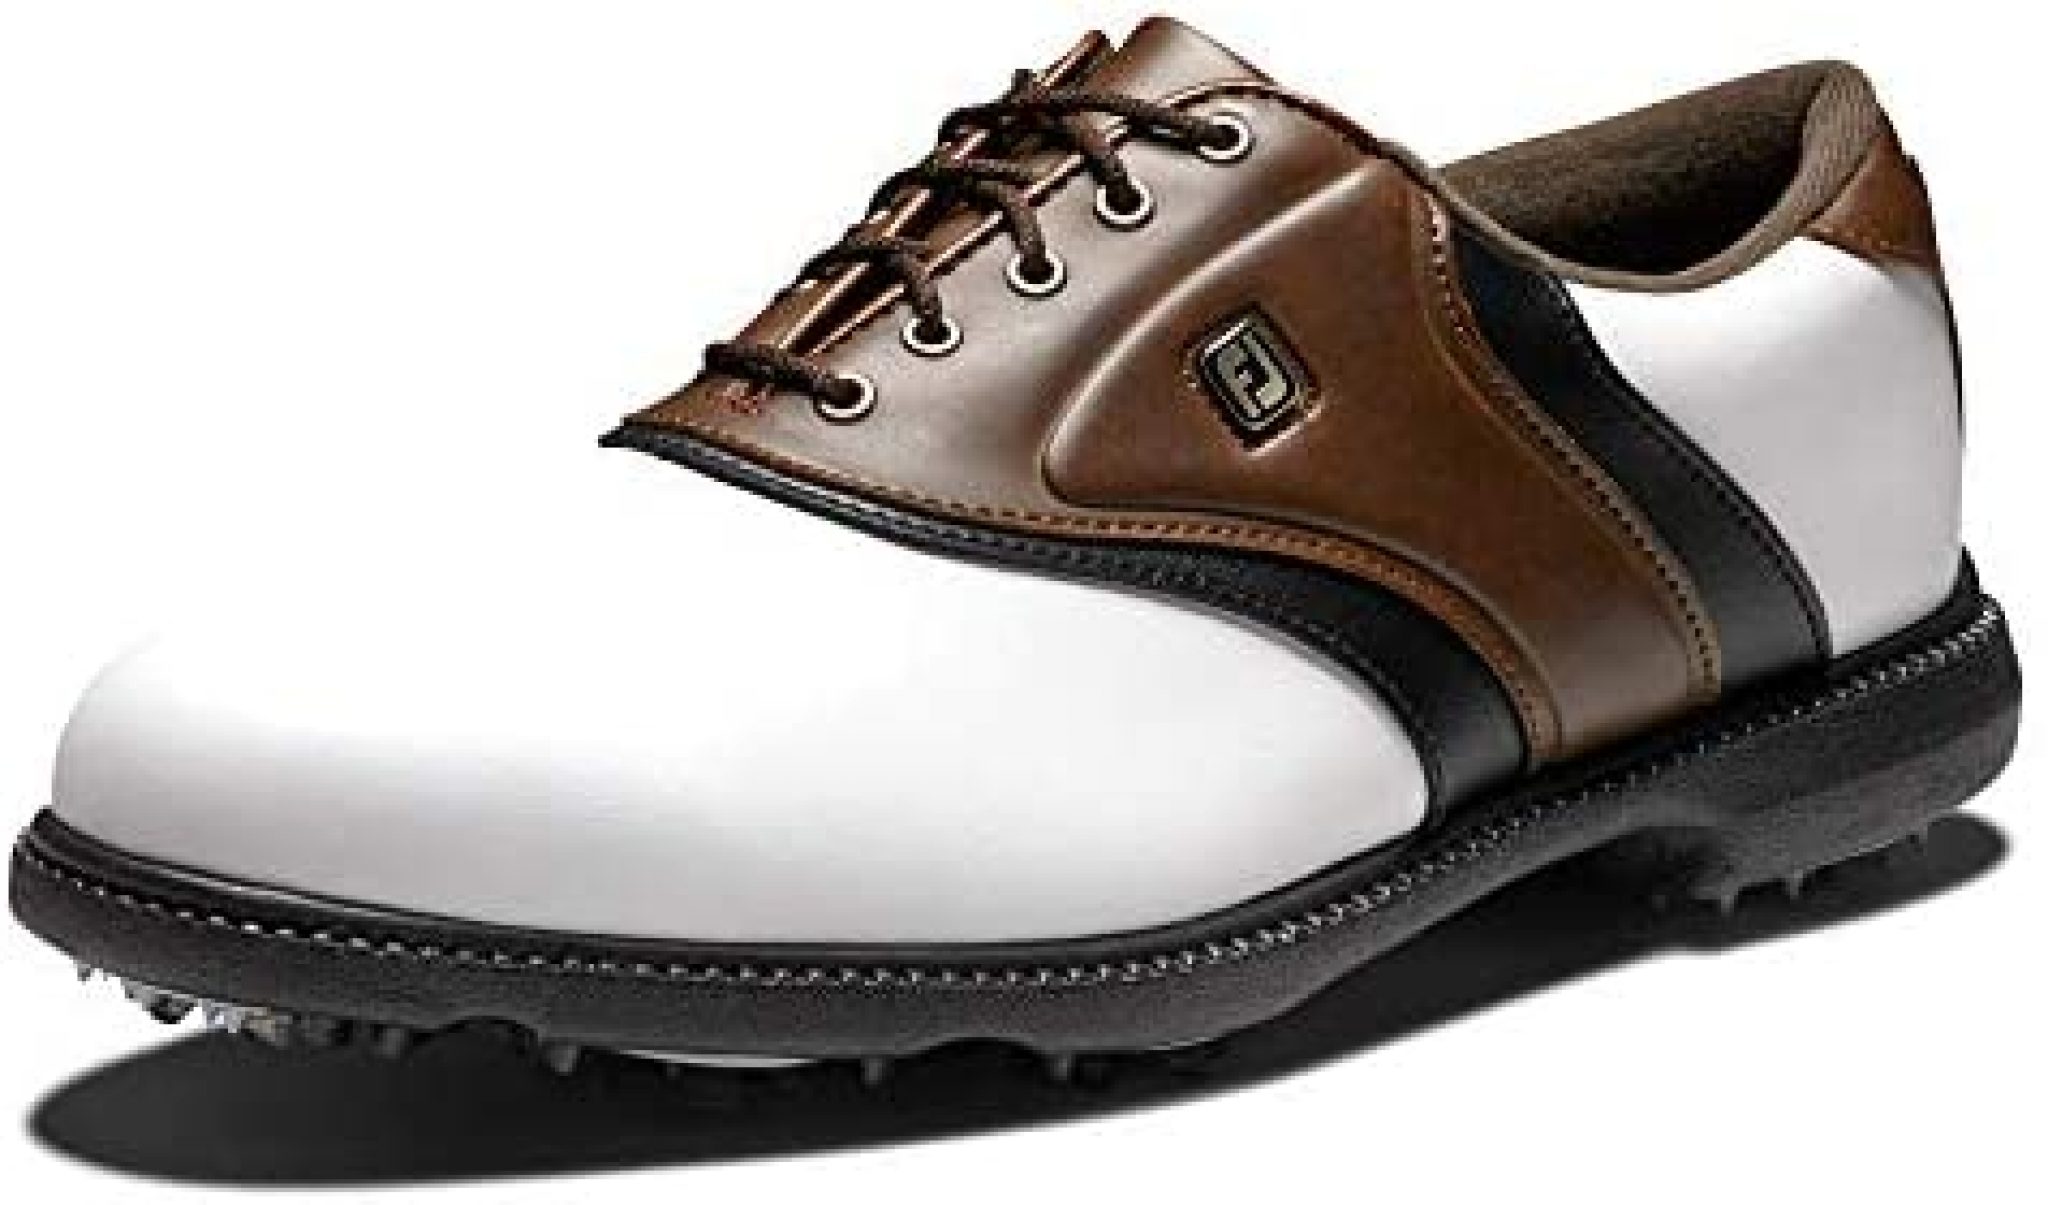 FootJoy Men's Fj Originals Golf Shoes Golf Products Review